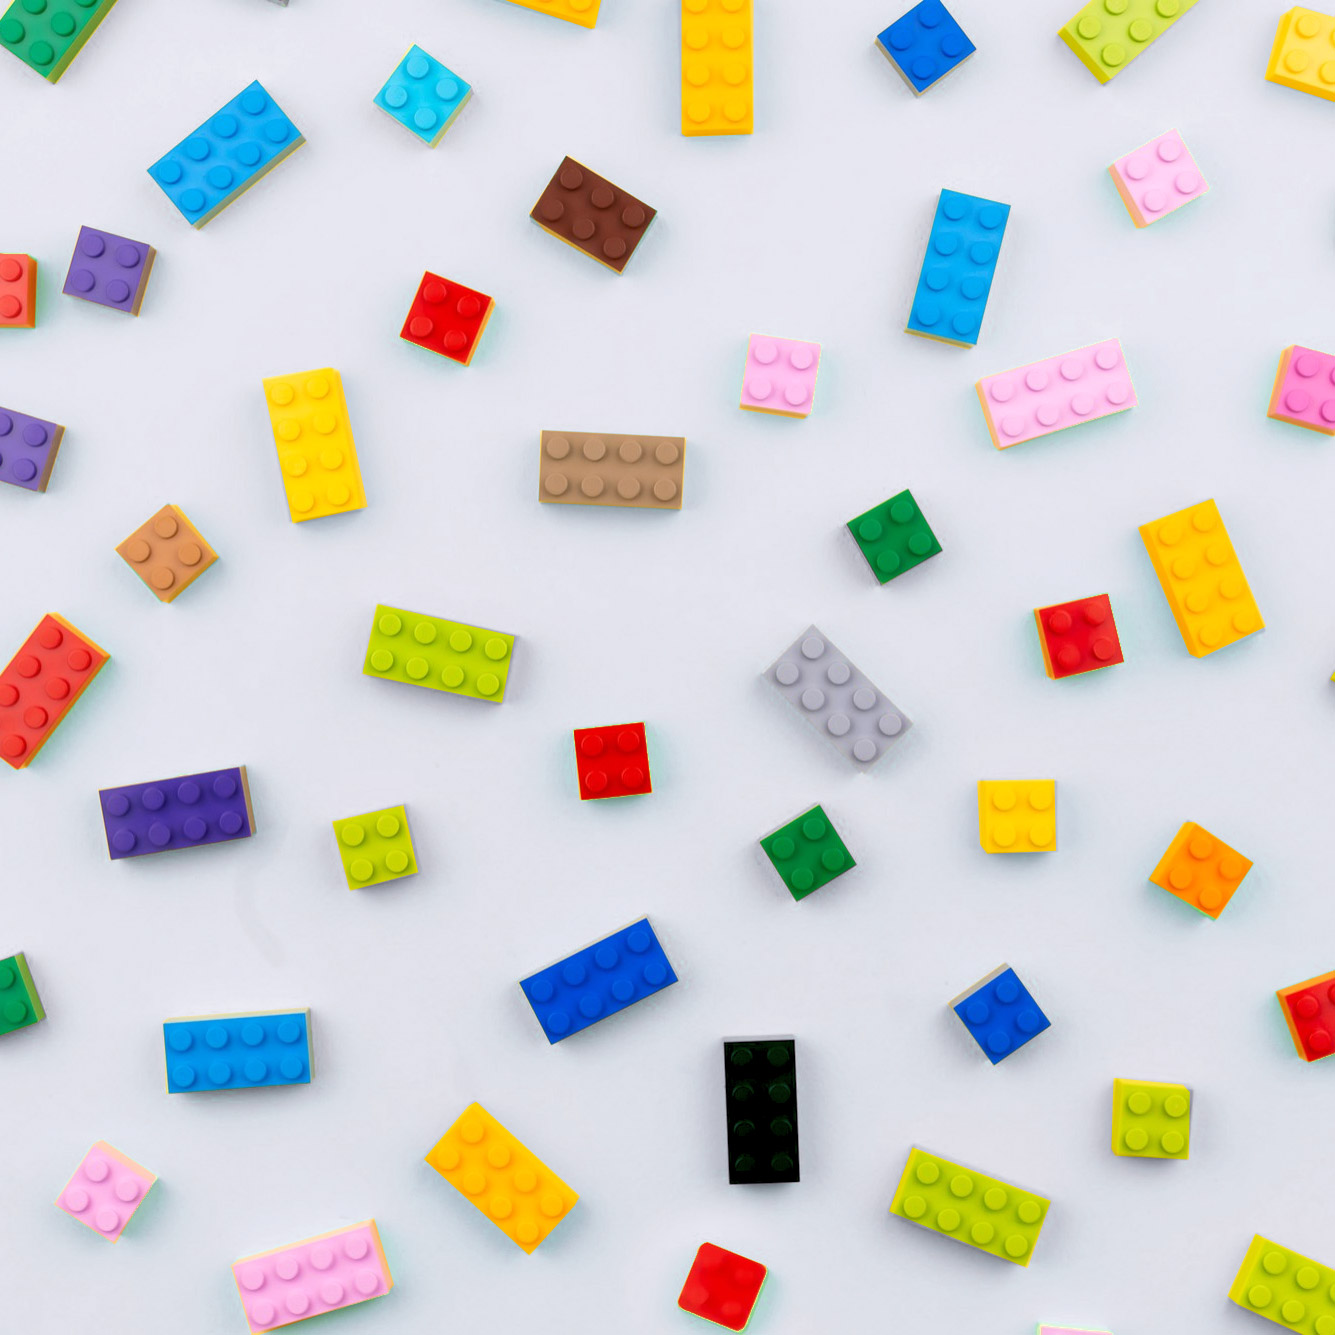 Bunte Legosteine auf dem Untergrund verteilt